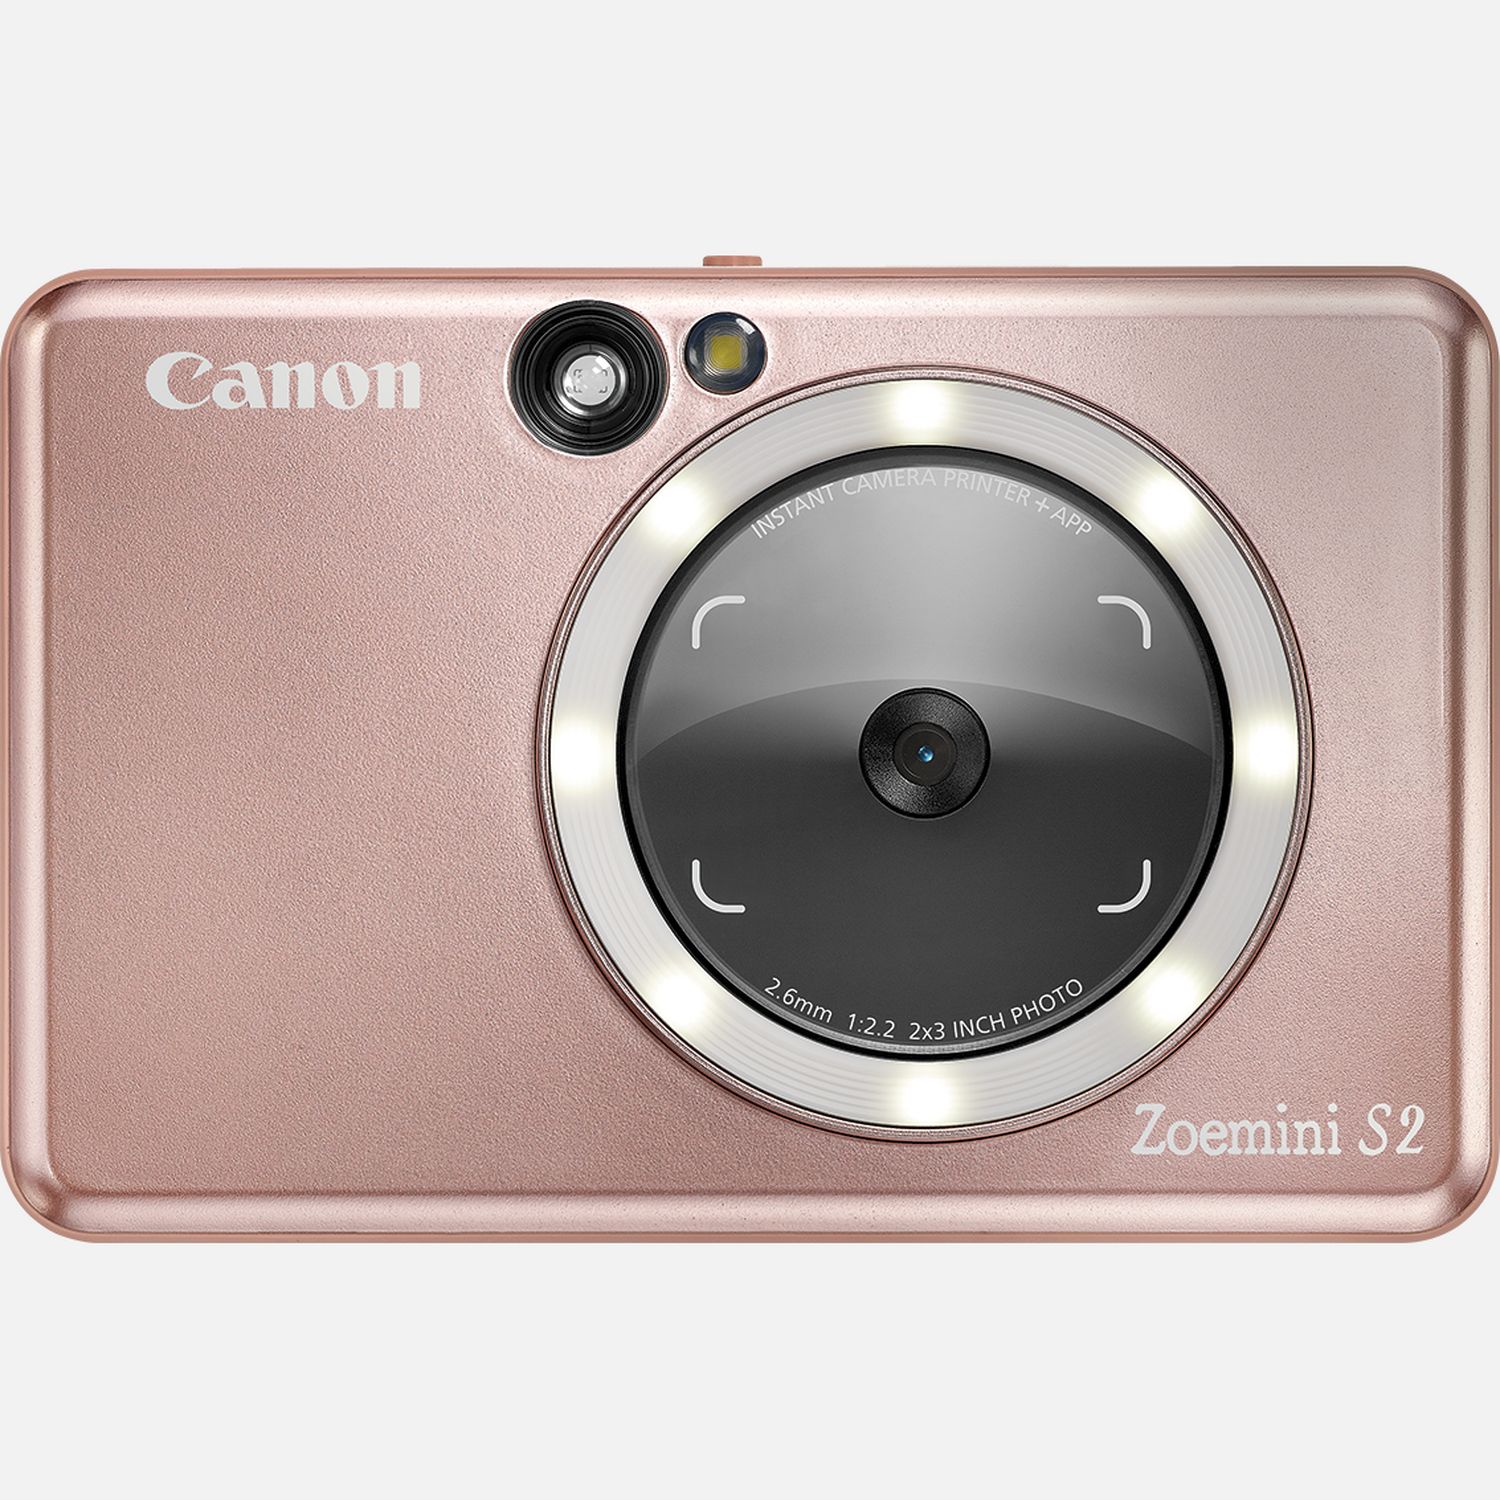 Image of Fotocamera istantanea a colori Canon Zoemini S2, oro rosa